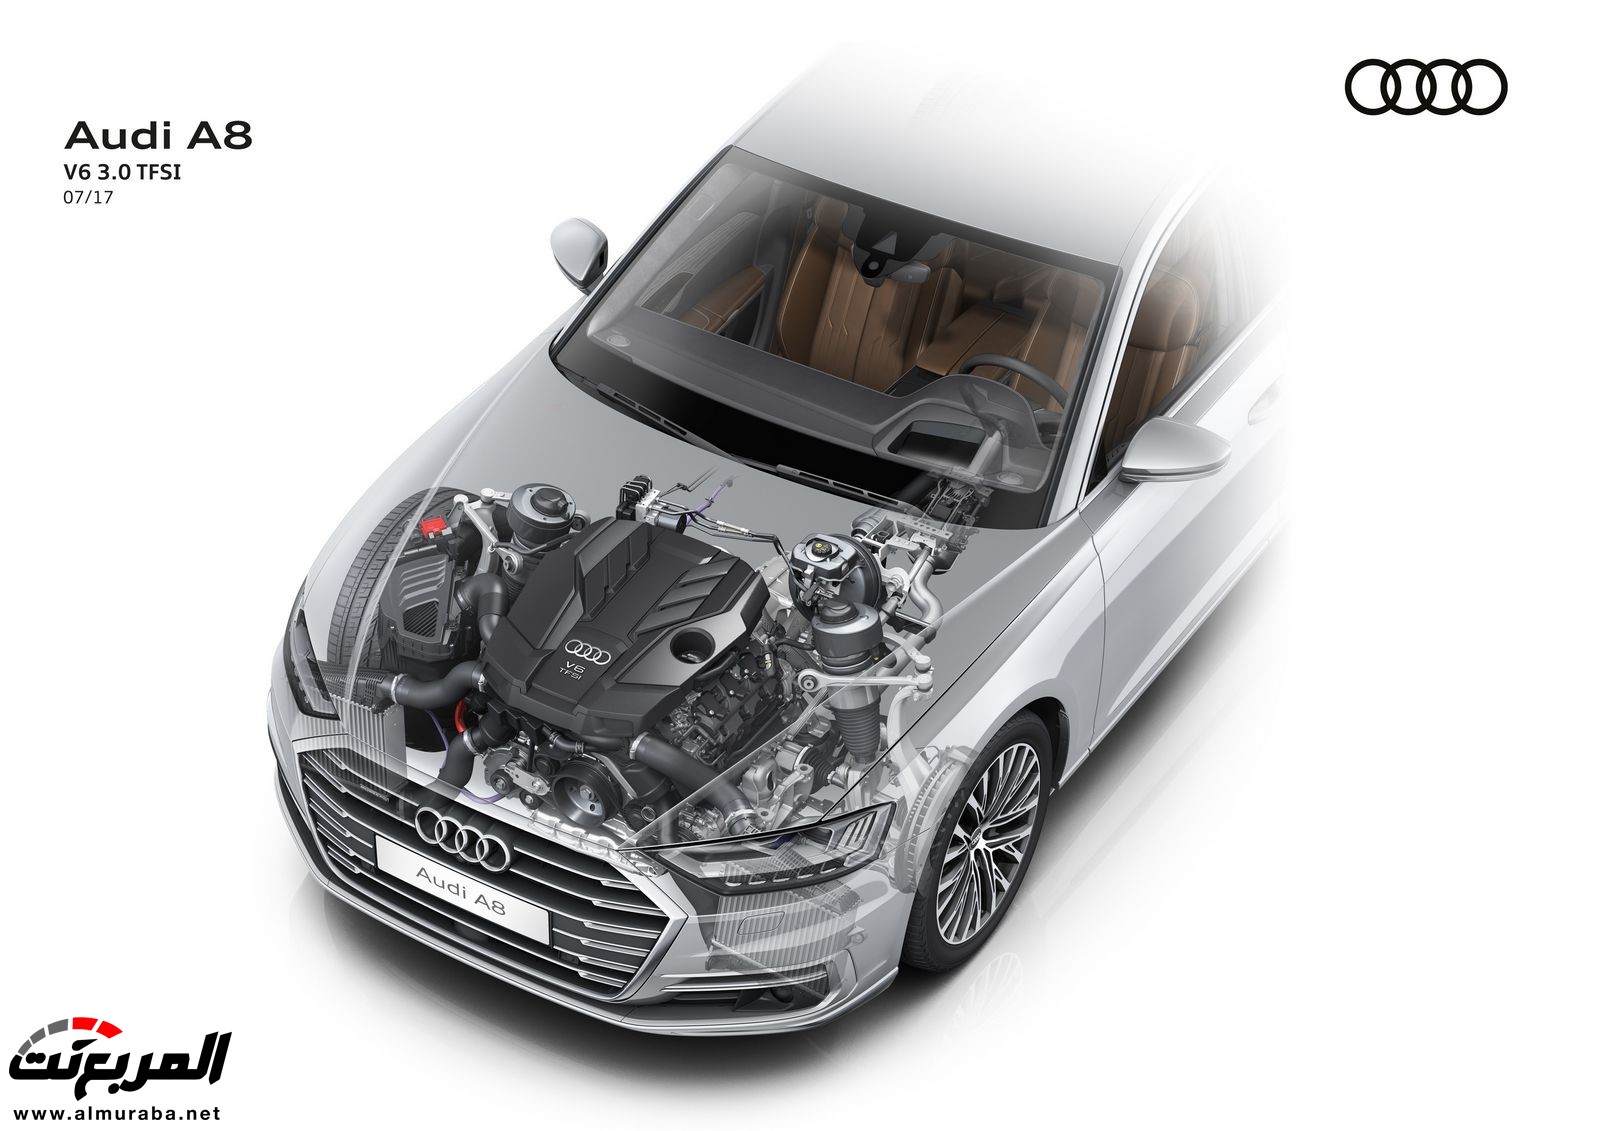 أودي A8 2018 الجديدة كلياً تكشف نفسها بتصميم وتقنيات متطورة "معلومات + 100 صورة" Audi A8 100